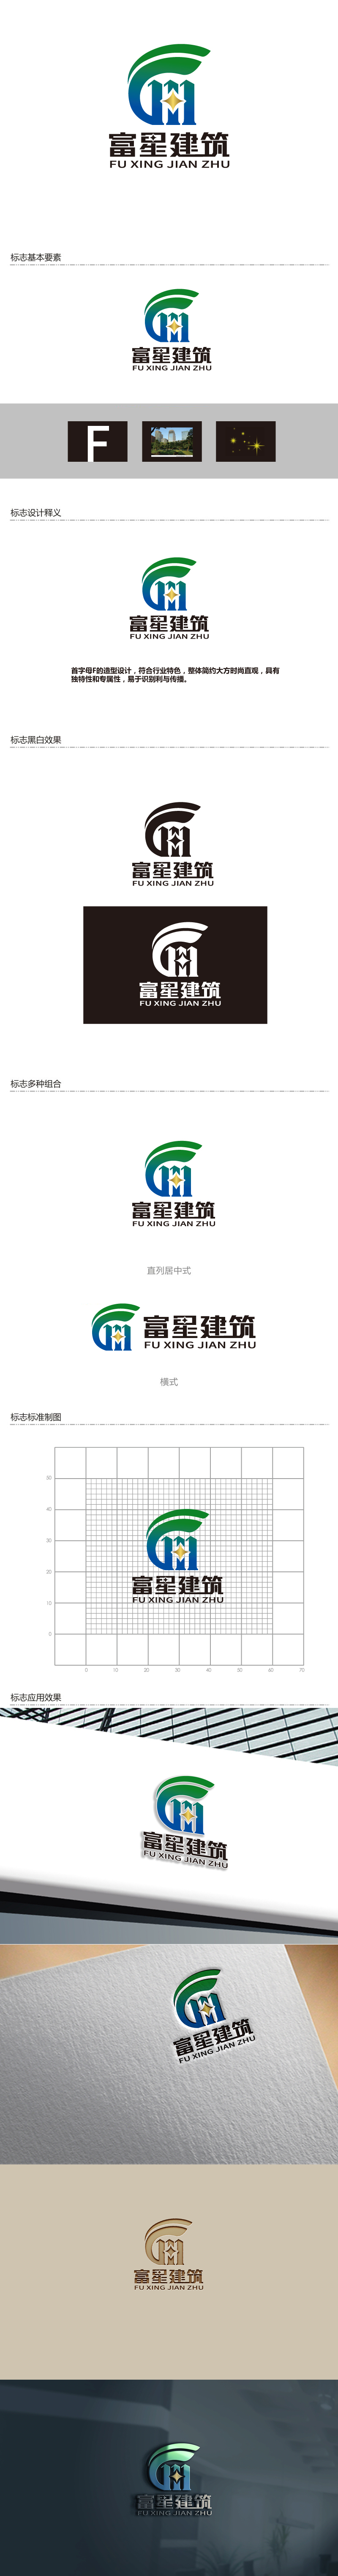 陈智江的天津富星建筑工程有限公司logo设计